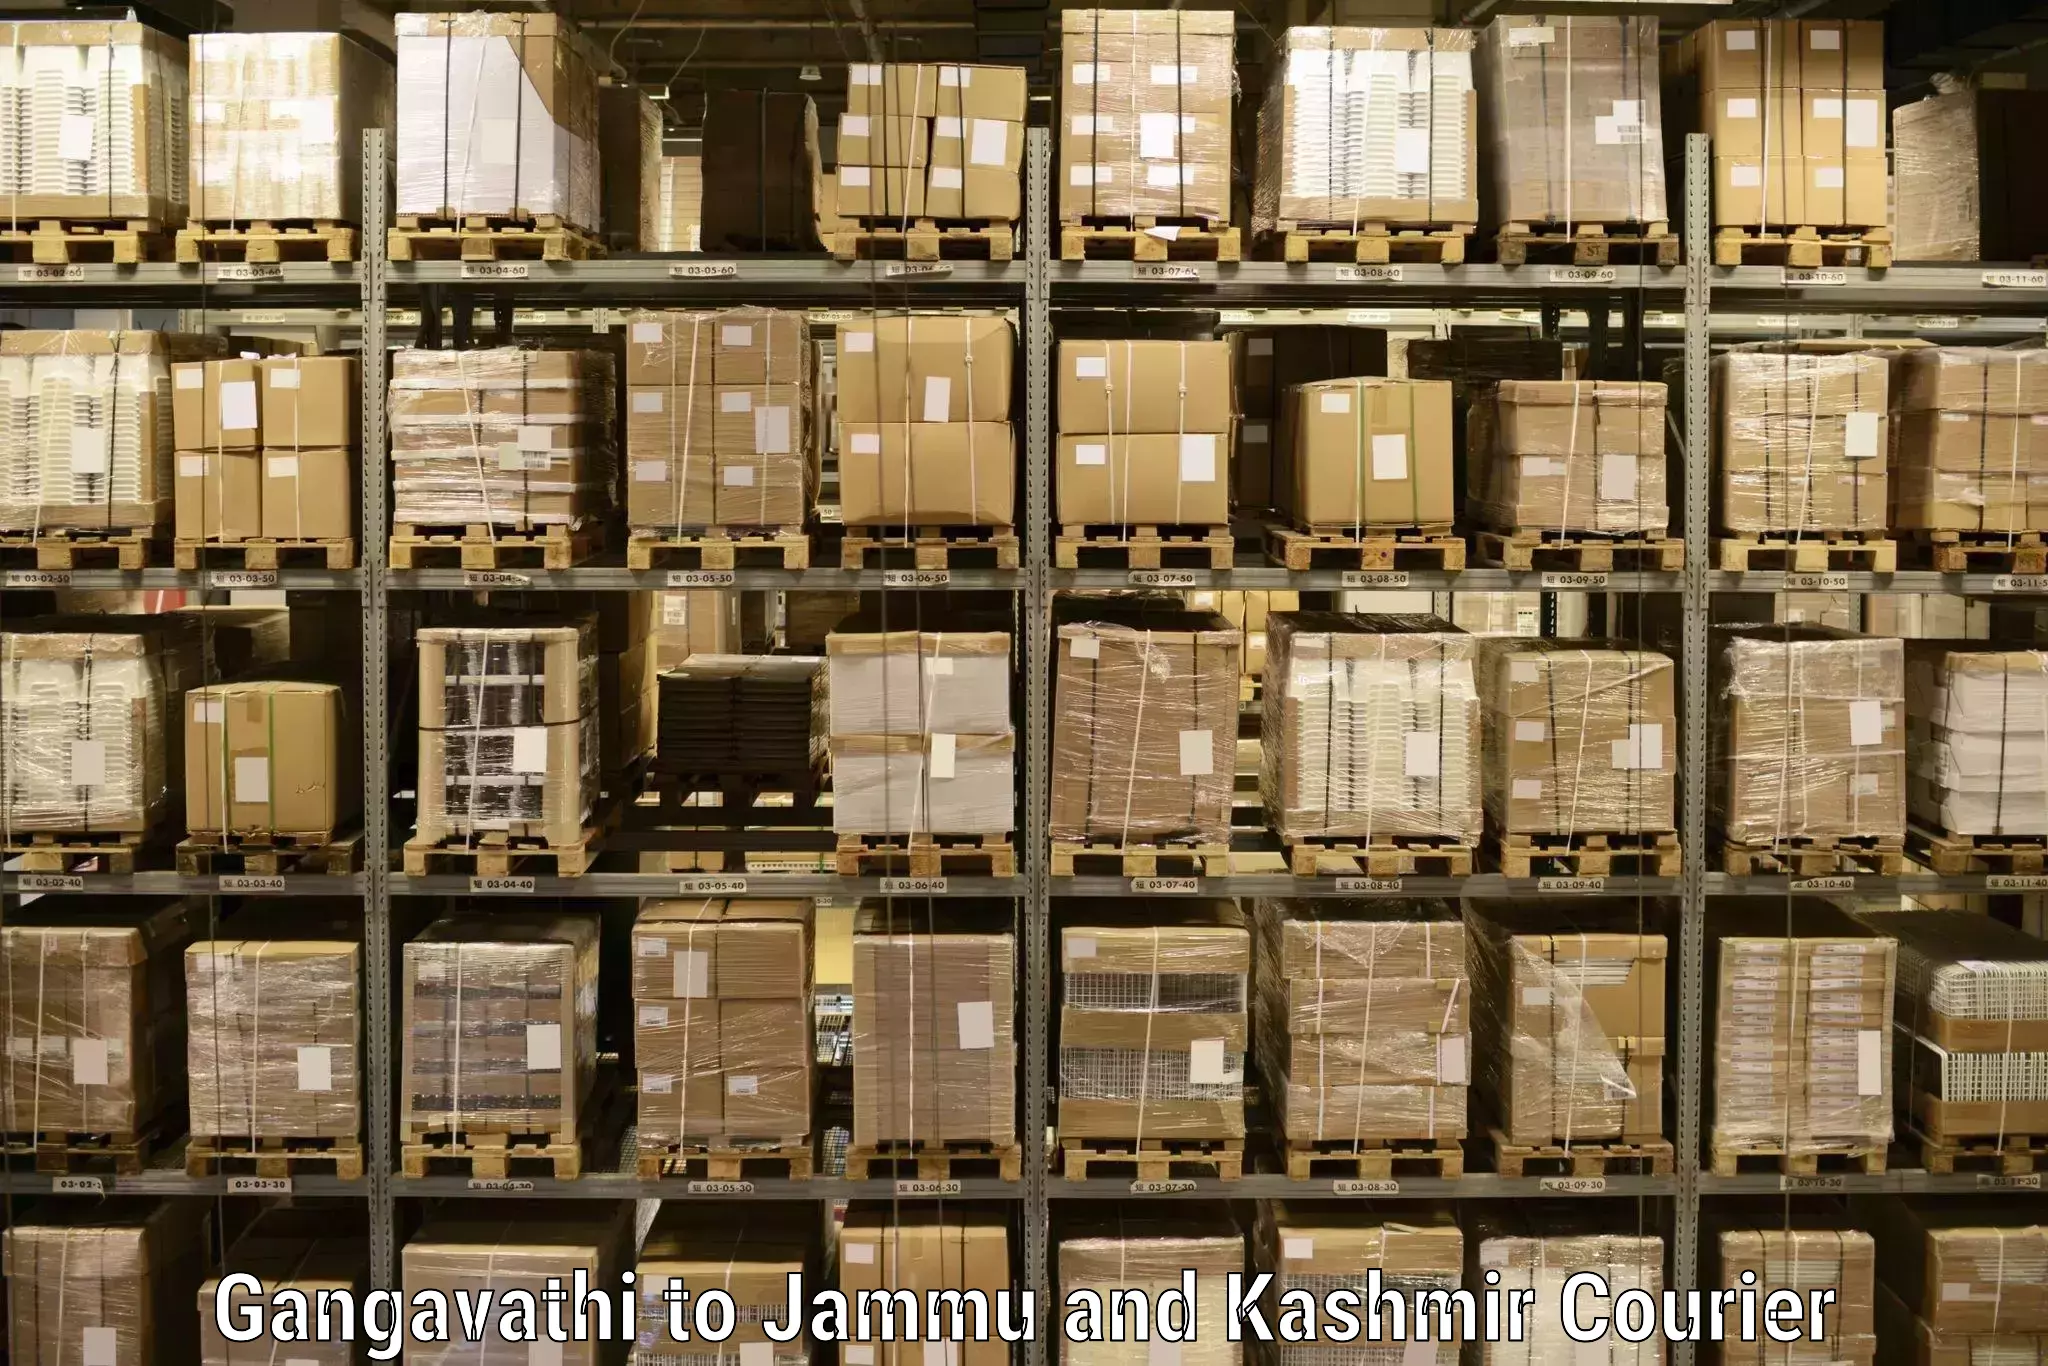 Flexible parcel services Gangavathi to Kupwara